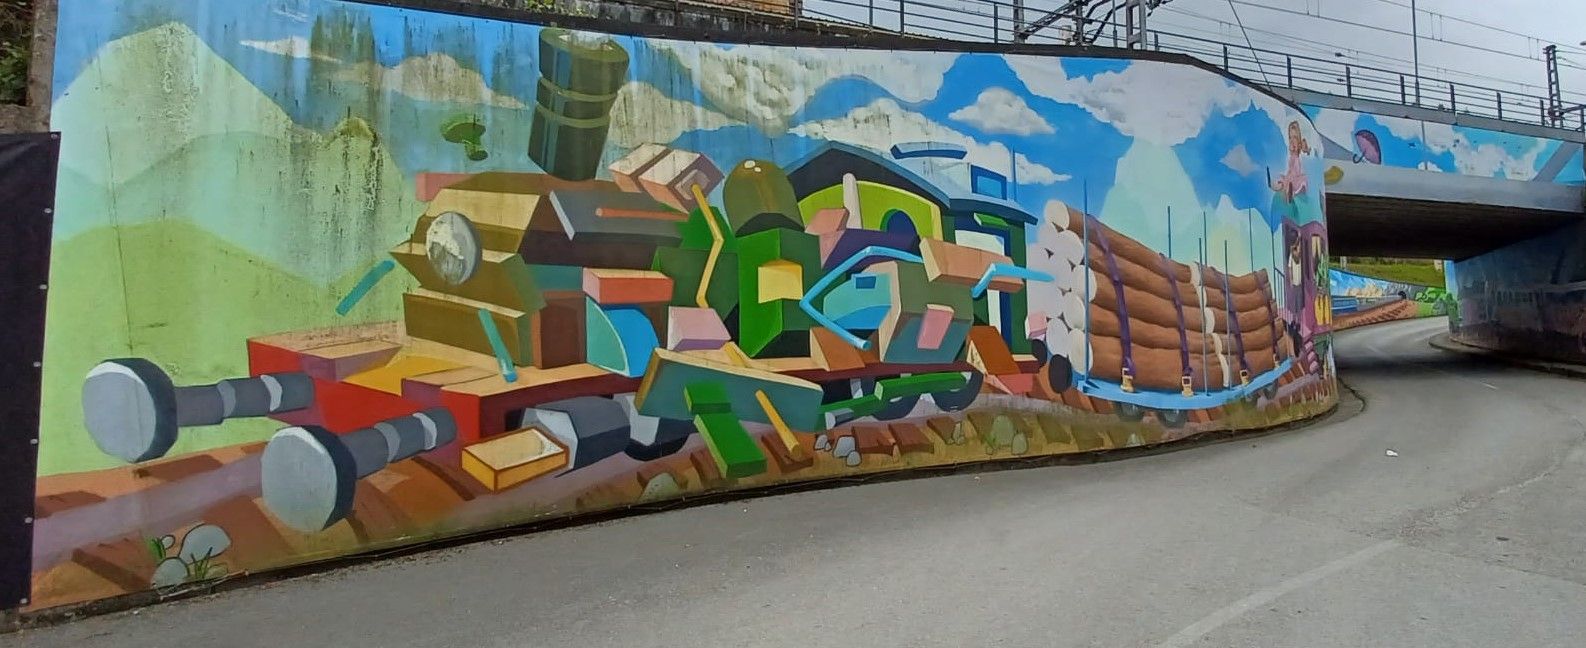 El grafiti más grande de Asturias en lona está en Llanera: así es el mural gigante de la localidad de Villabona